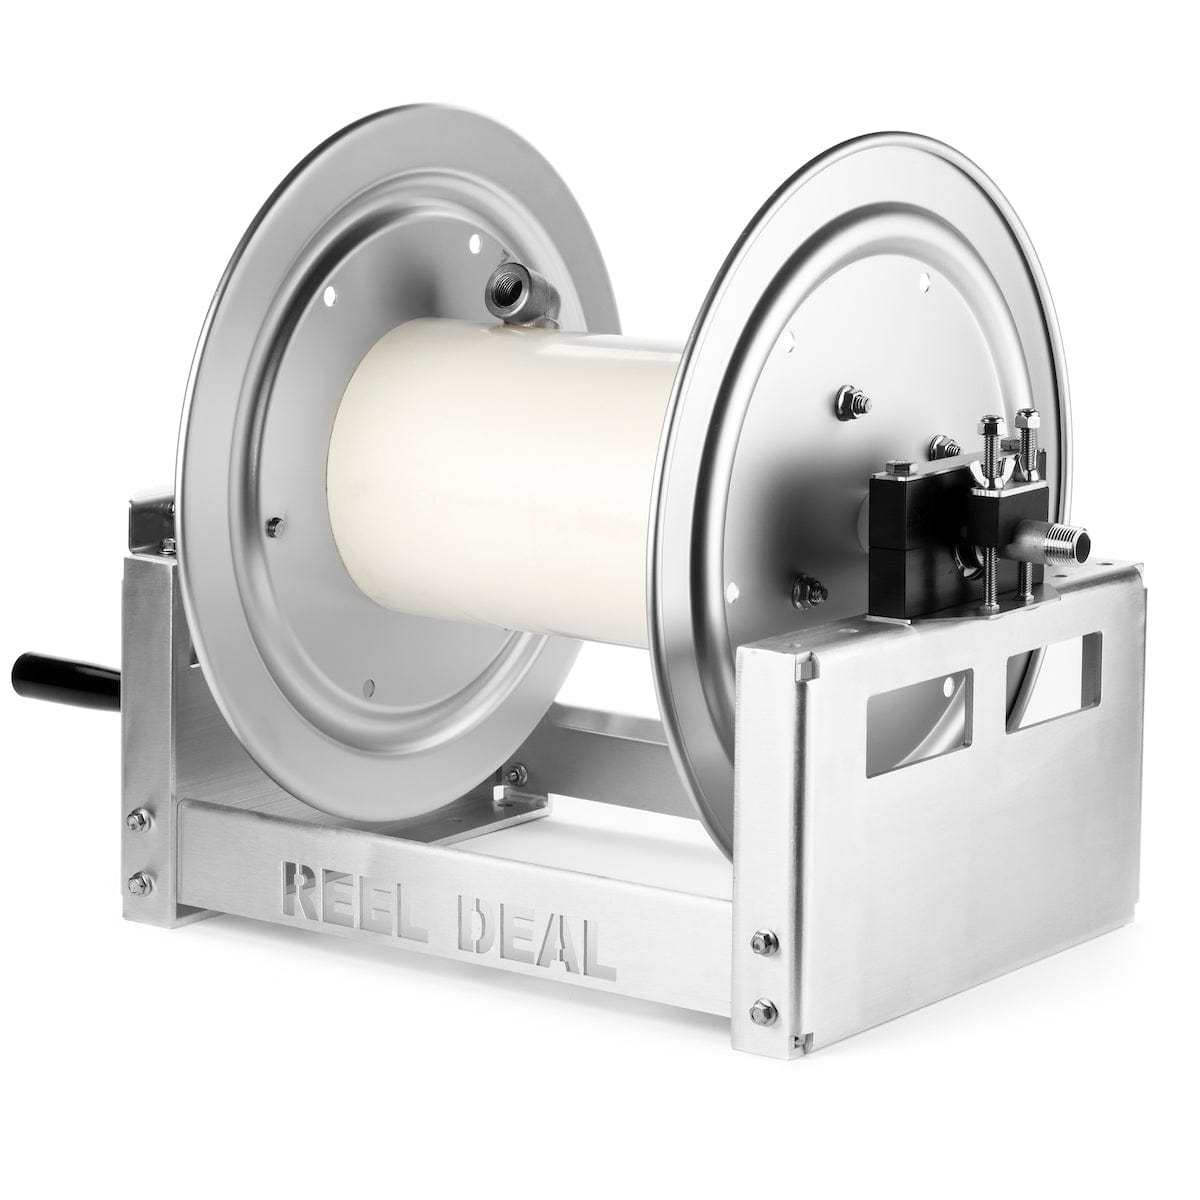 Reel Deal* Hose Reel-12 inch – Southeast Softwash